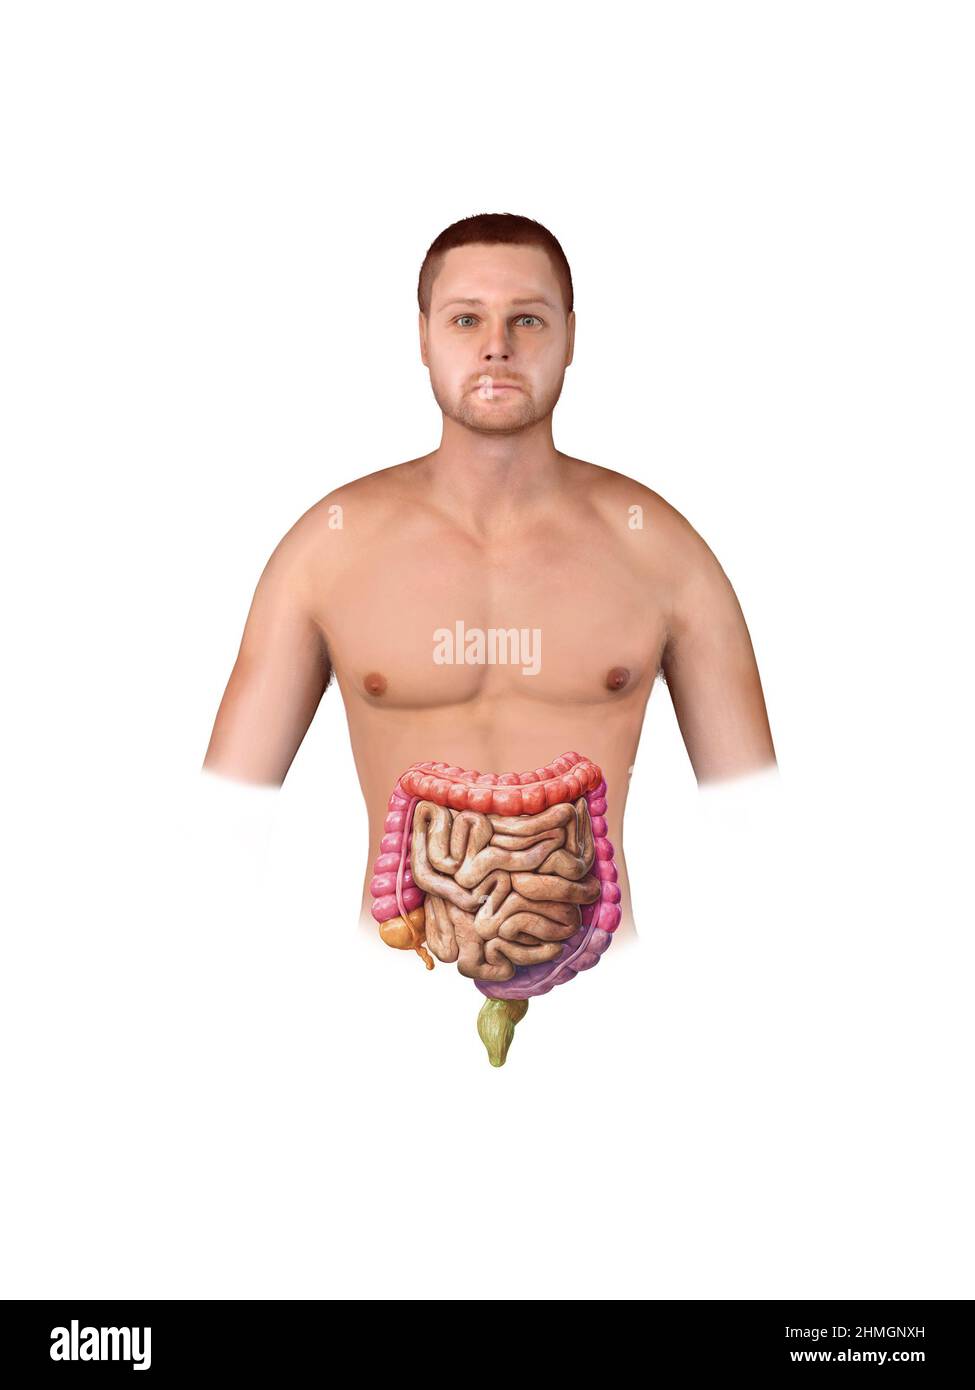 Intestino crasso e piccolo isolato su bianco. Anatomia del sistema digestivo umano. Tratto gastrointestinale. illustrazione del rendering 3d Foto Stock